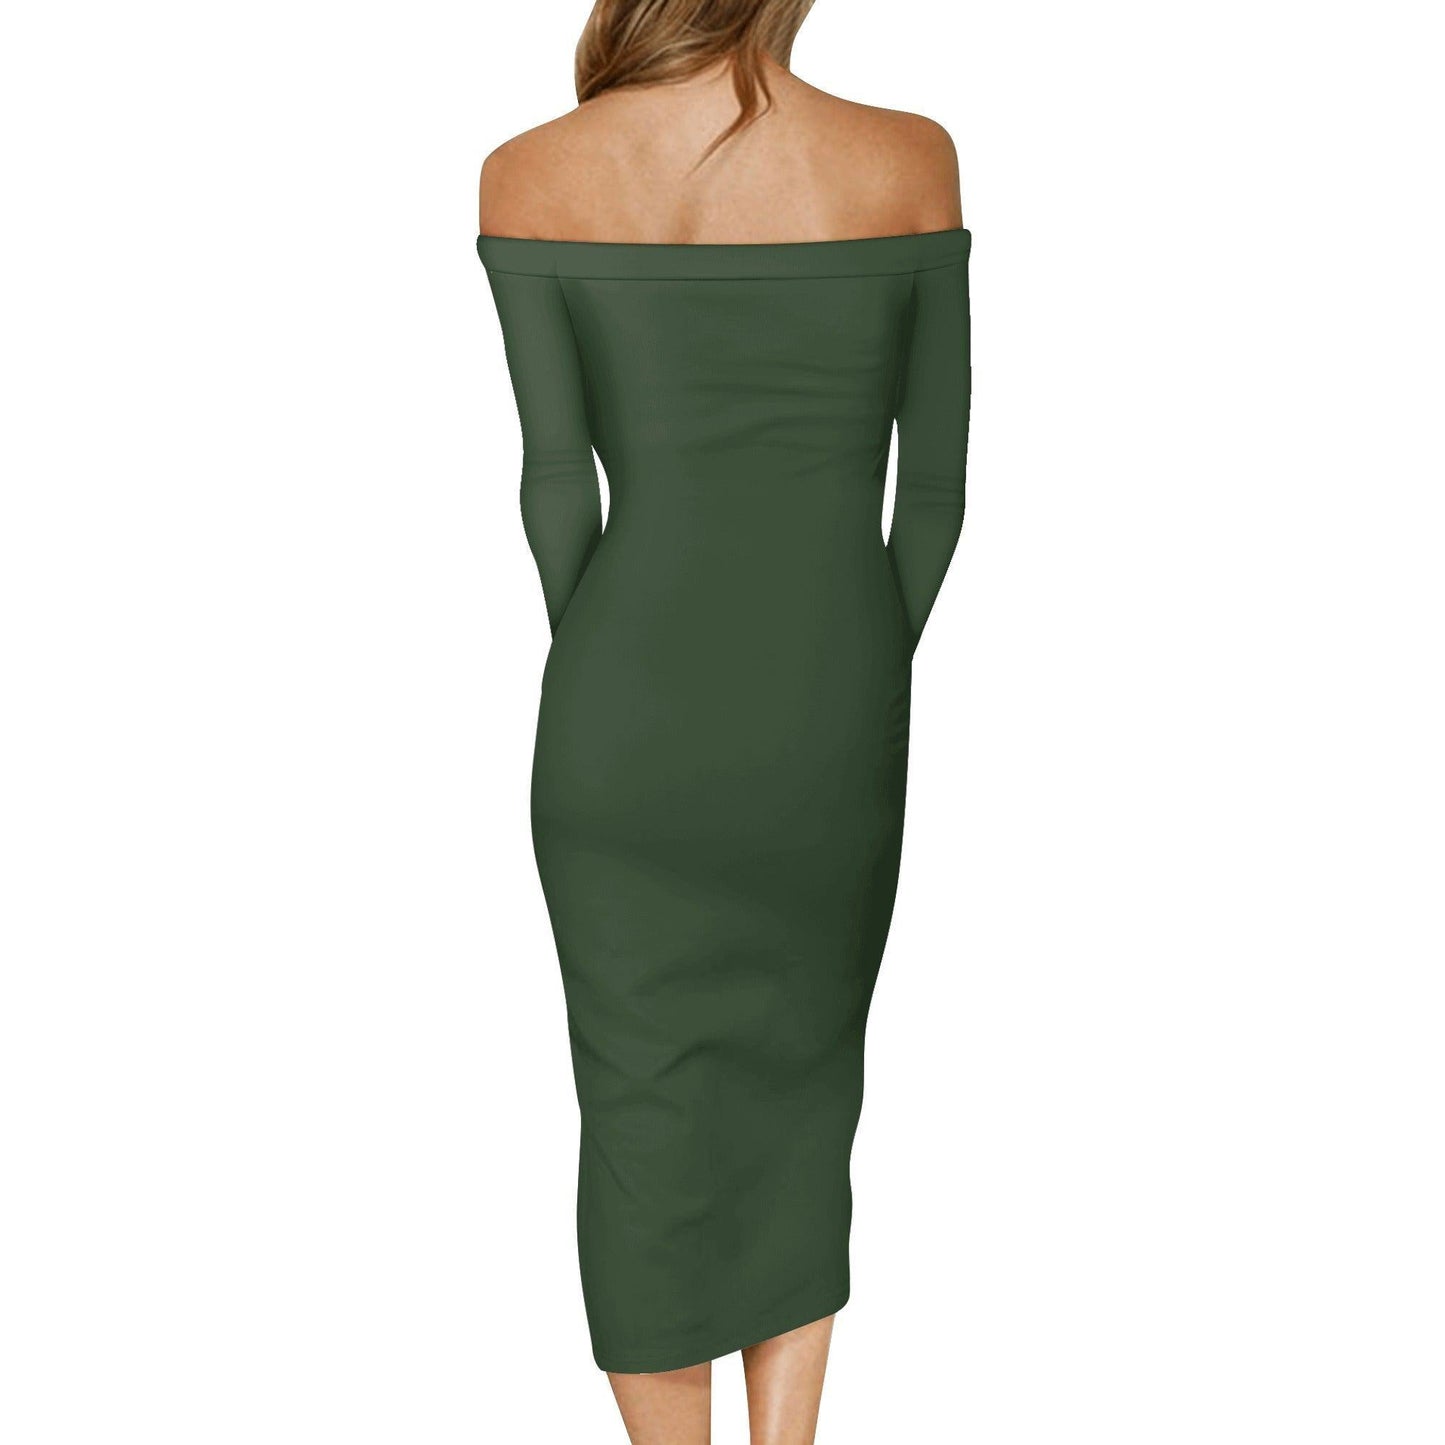 Myrte Long Sleeve Off-Shoulder-Kleid -- Myrte Long Sleeve Off-Shoulder-Kleid - undefined Off-Shoulder-Kleid | JLR Design